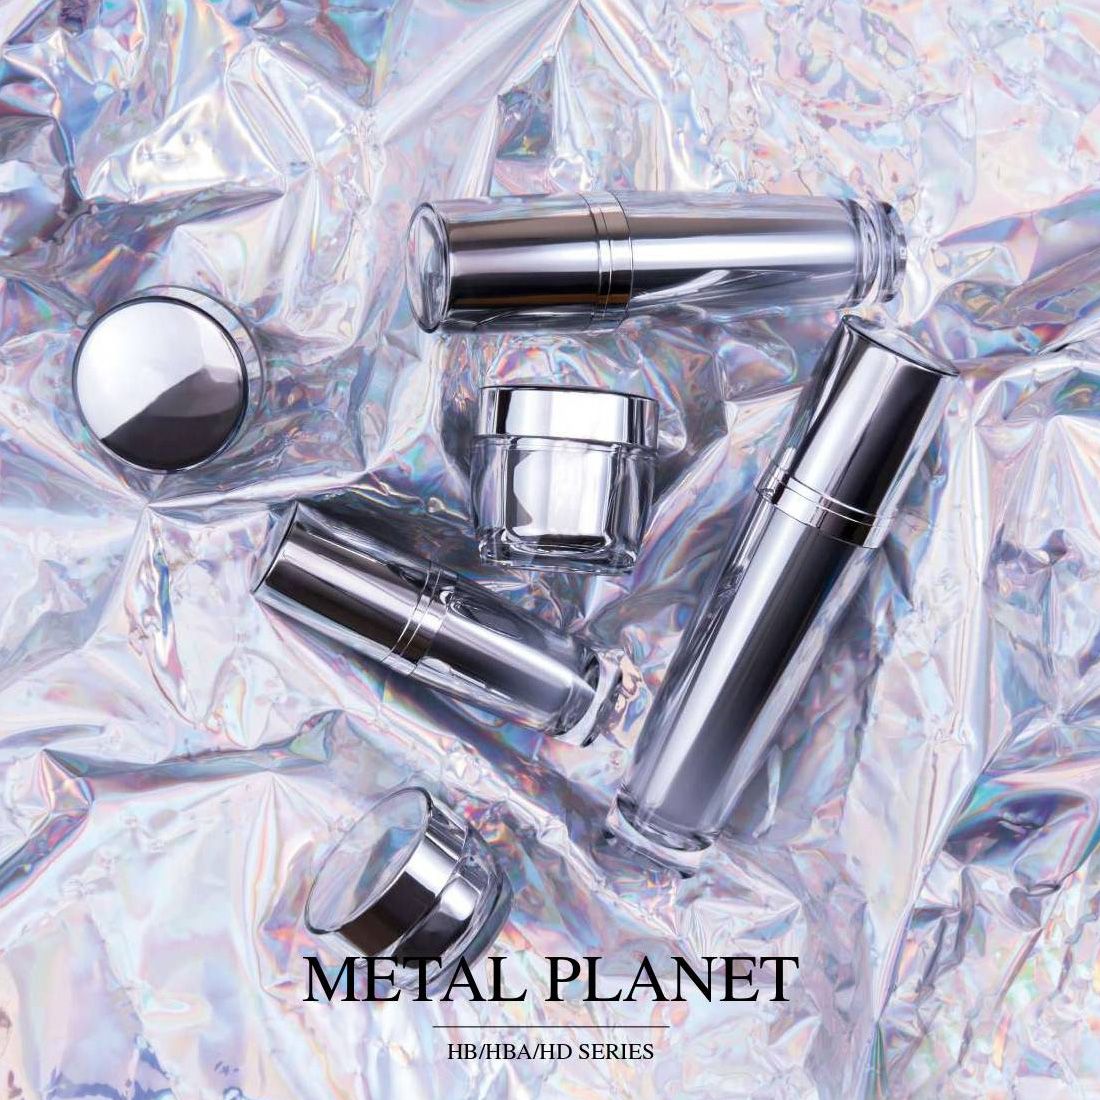 Metal Planet (embalagem acrílica luxuosa para cosméticos e cuidados com a pele) - Série HB/HBA/HD